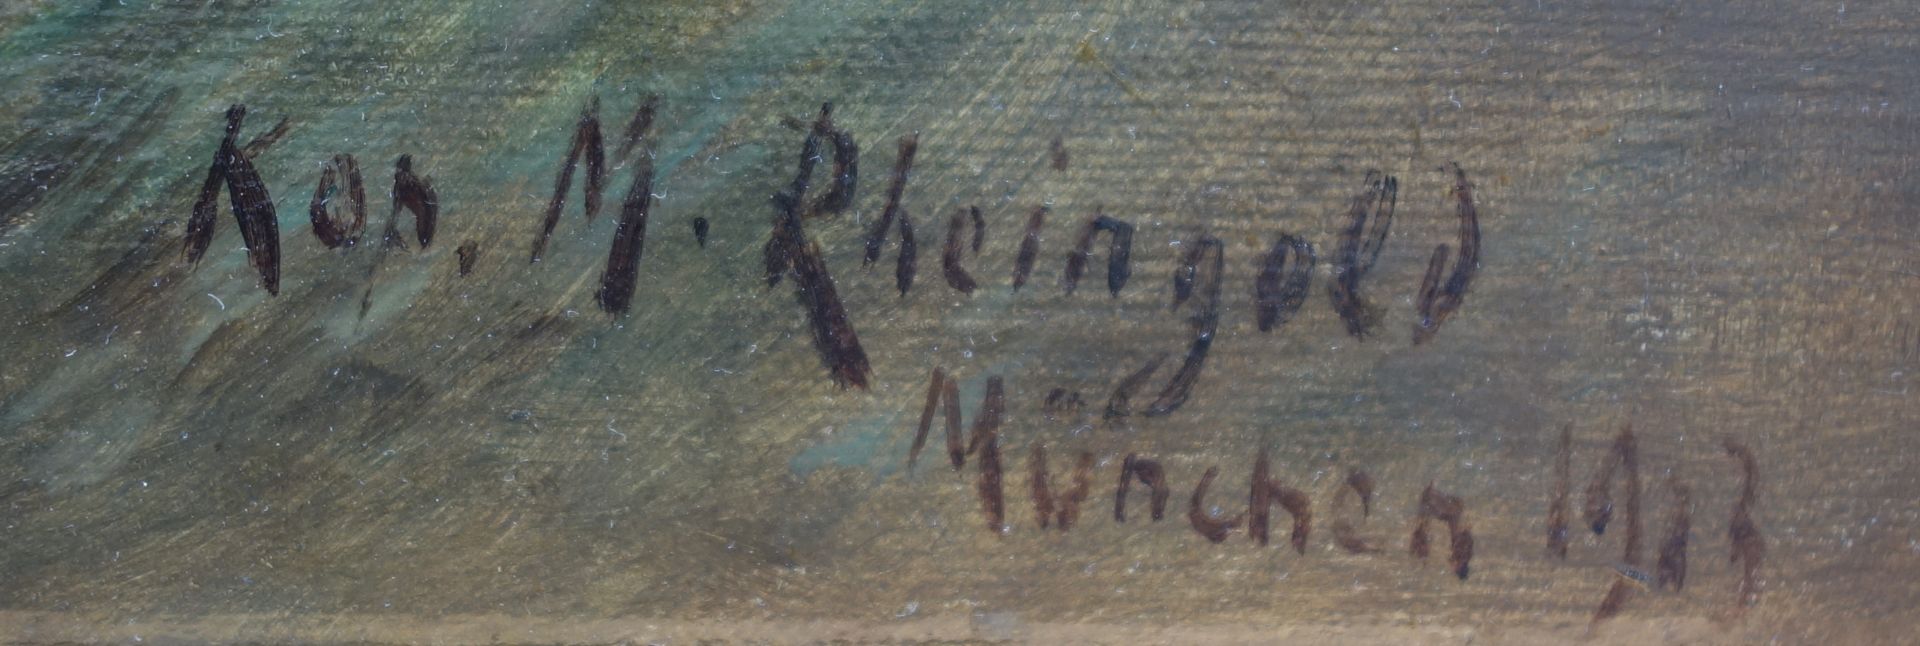 Michael Rheingold (1887-1934, Zürich), "Der Gang nach Emmaus" nach Arnold Böcklin, 1913, Öl/ - Bild 2 aus 2